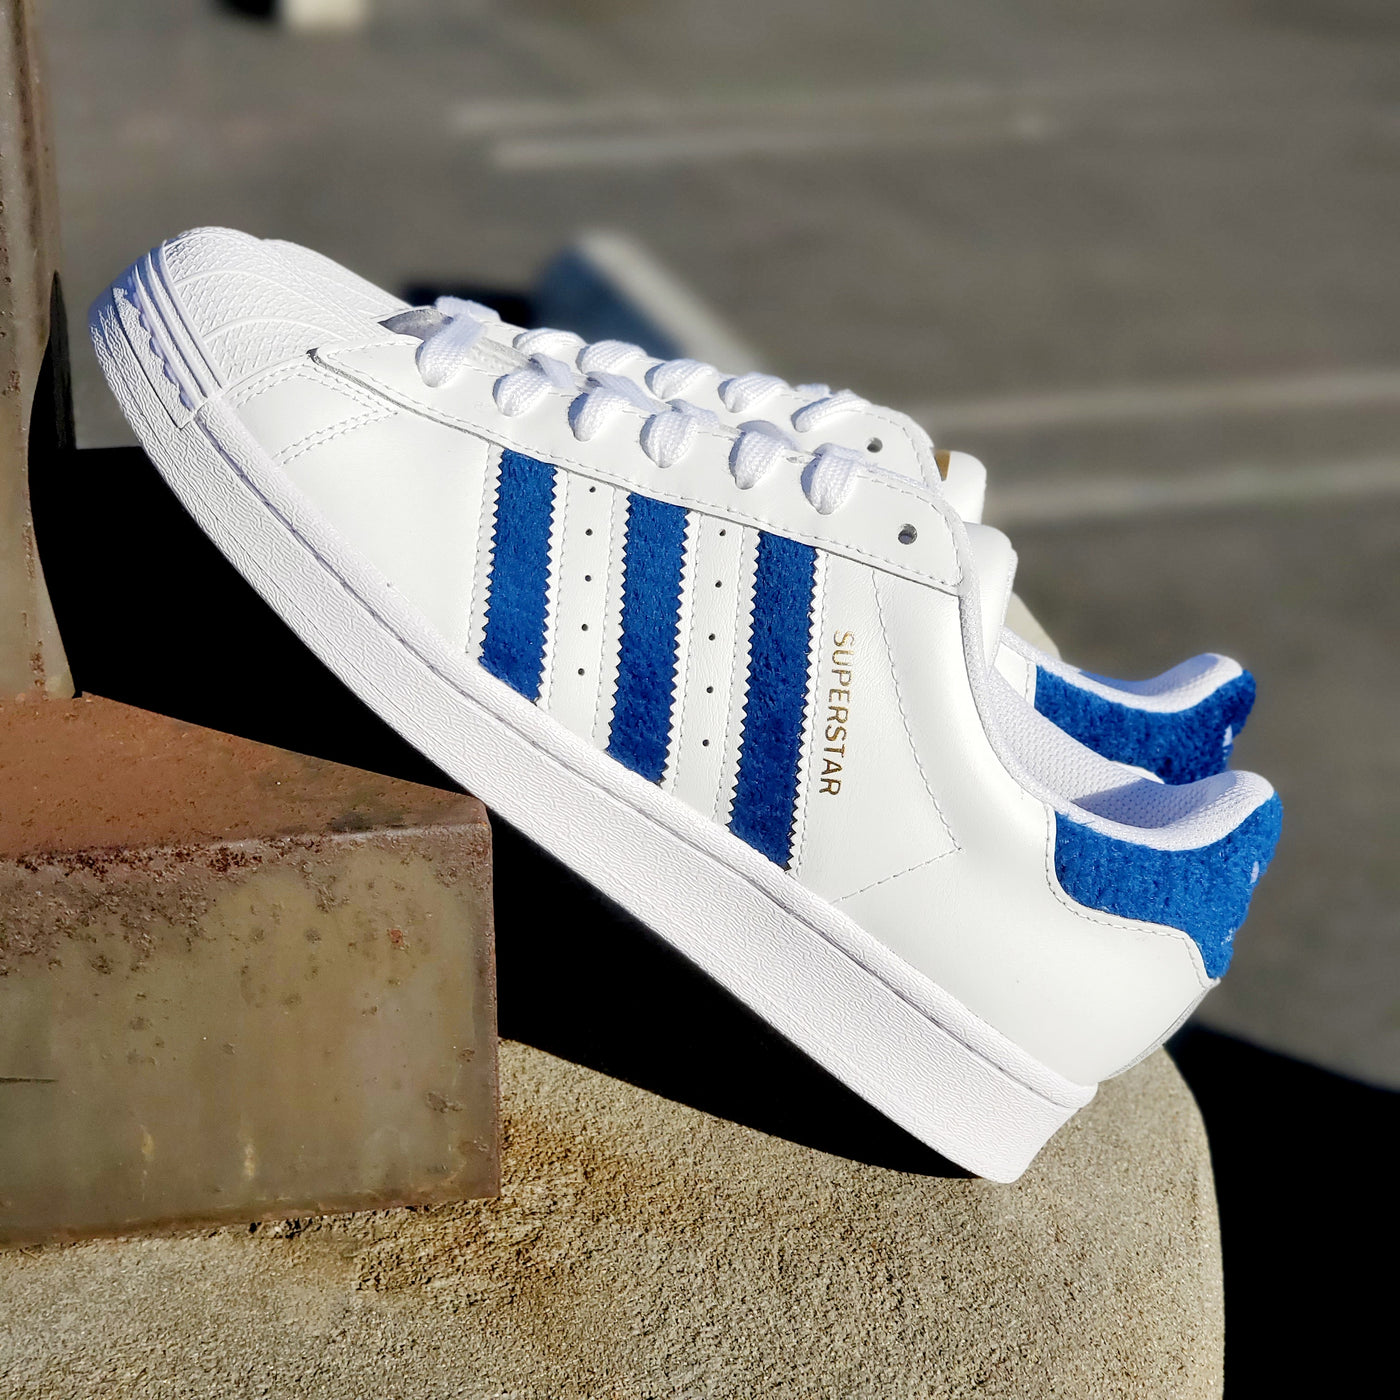 Adidas Superstar White Blue